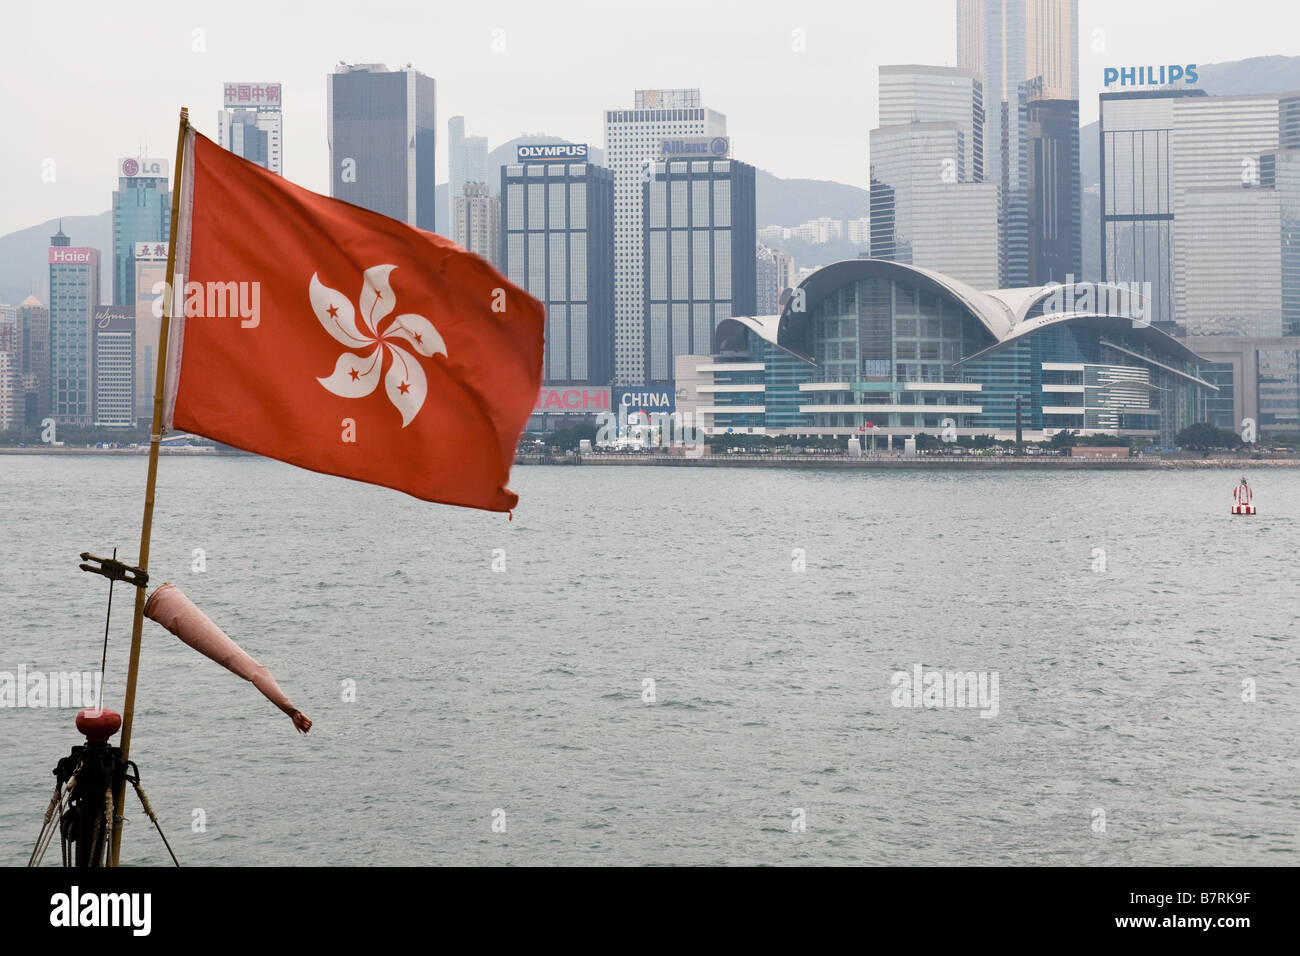 Hong Kong-Flagge mit Wanchai Convention Center im Hintergrund